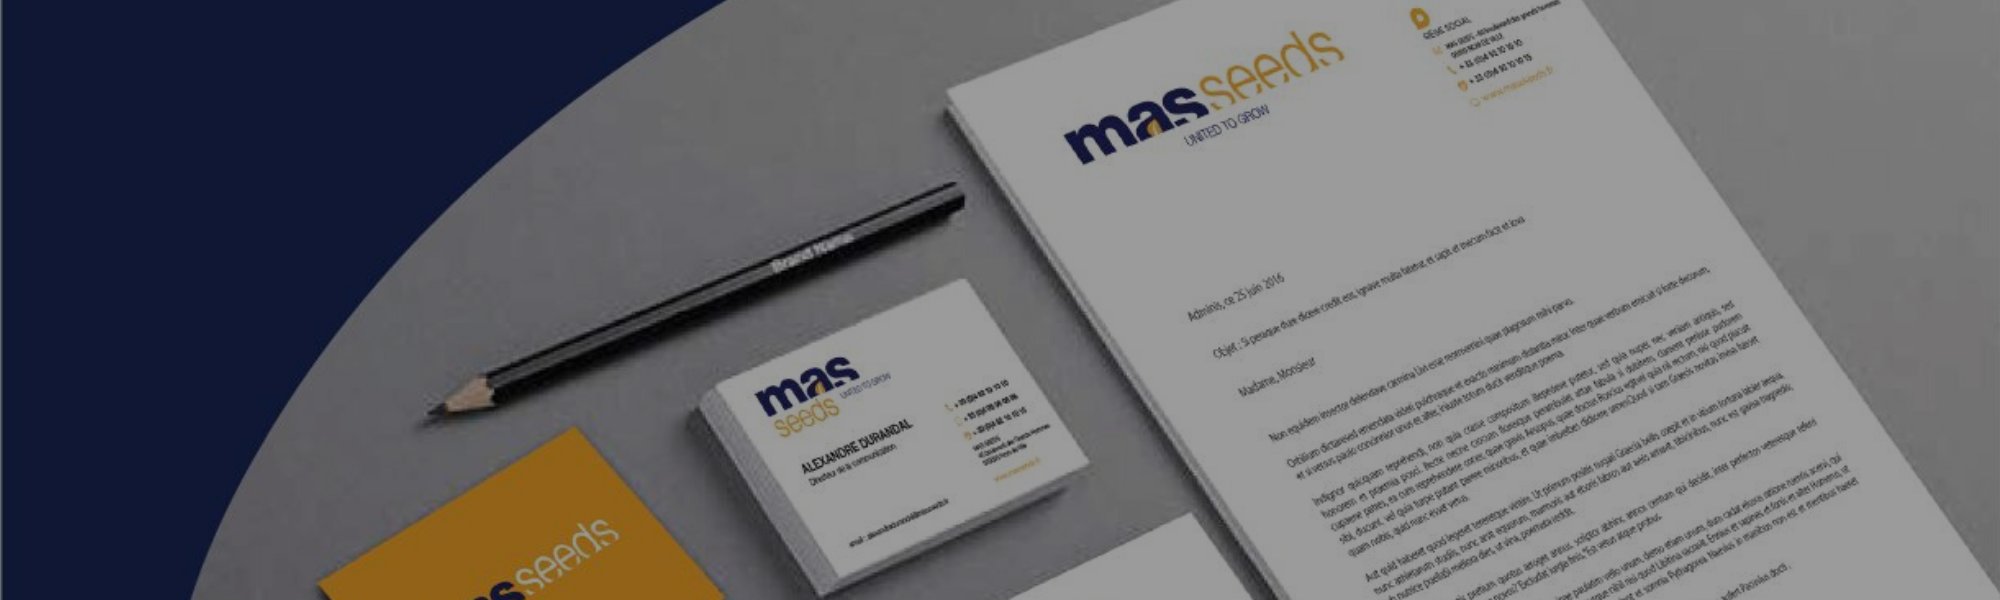 MAS Seeds company name